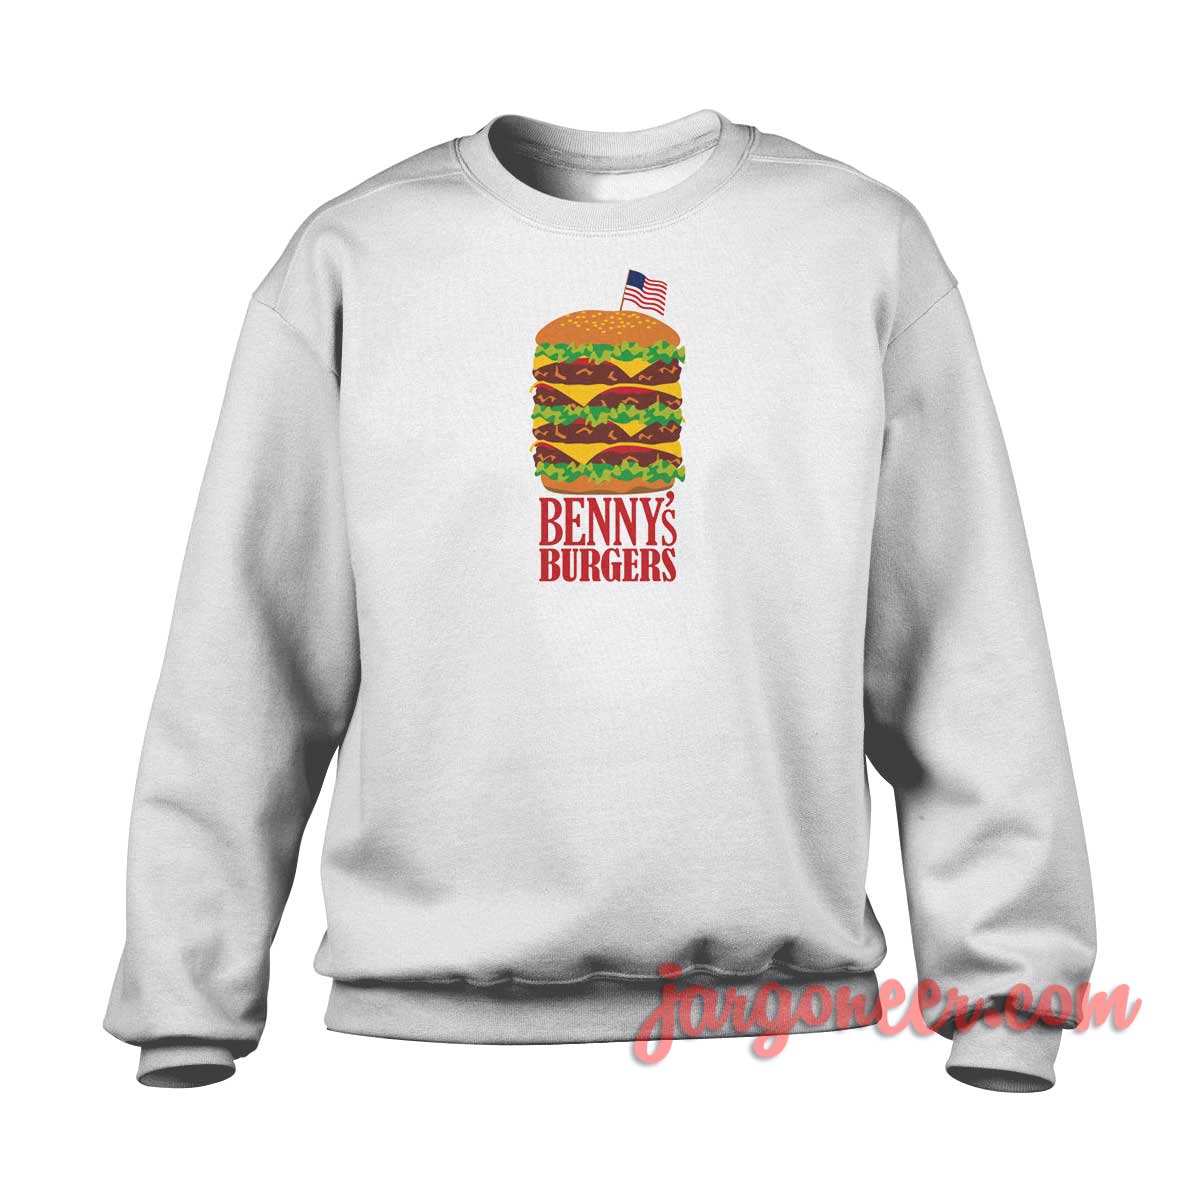 Bennys Burger Stranger Things 1 - Shop Unique Graphic Cool Shirt Designs